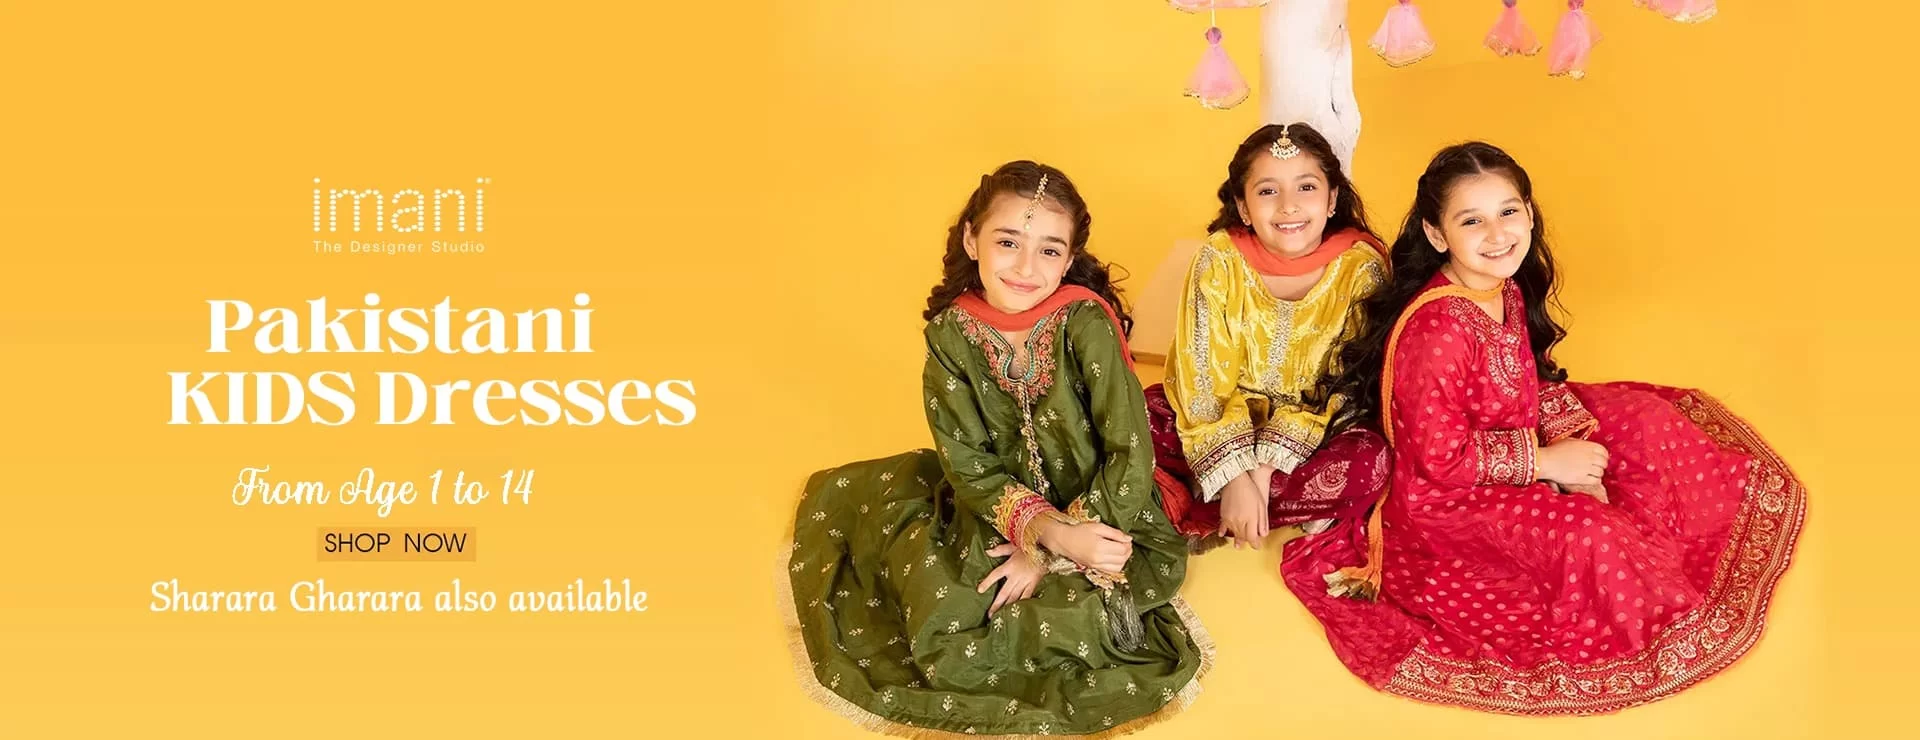 Pakistani Kids Dress 1 Imanistudio.com